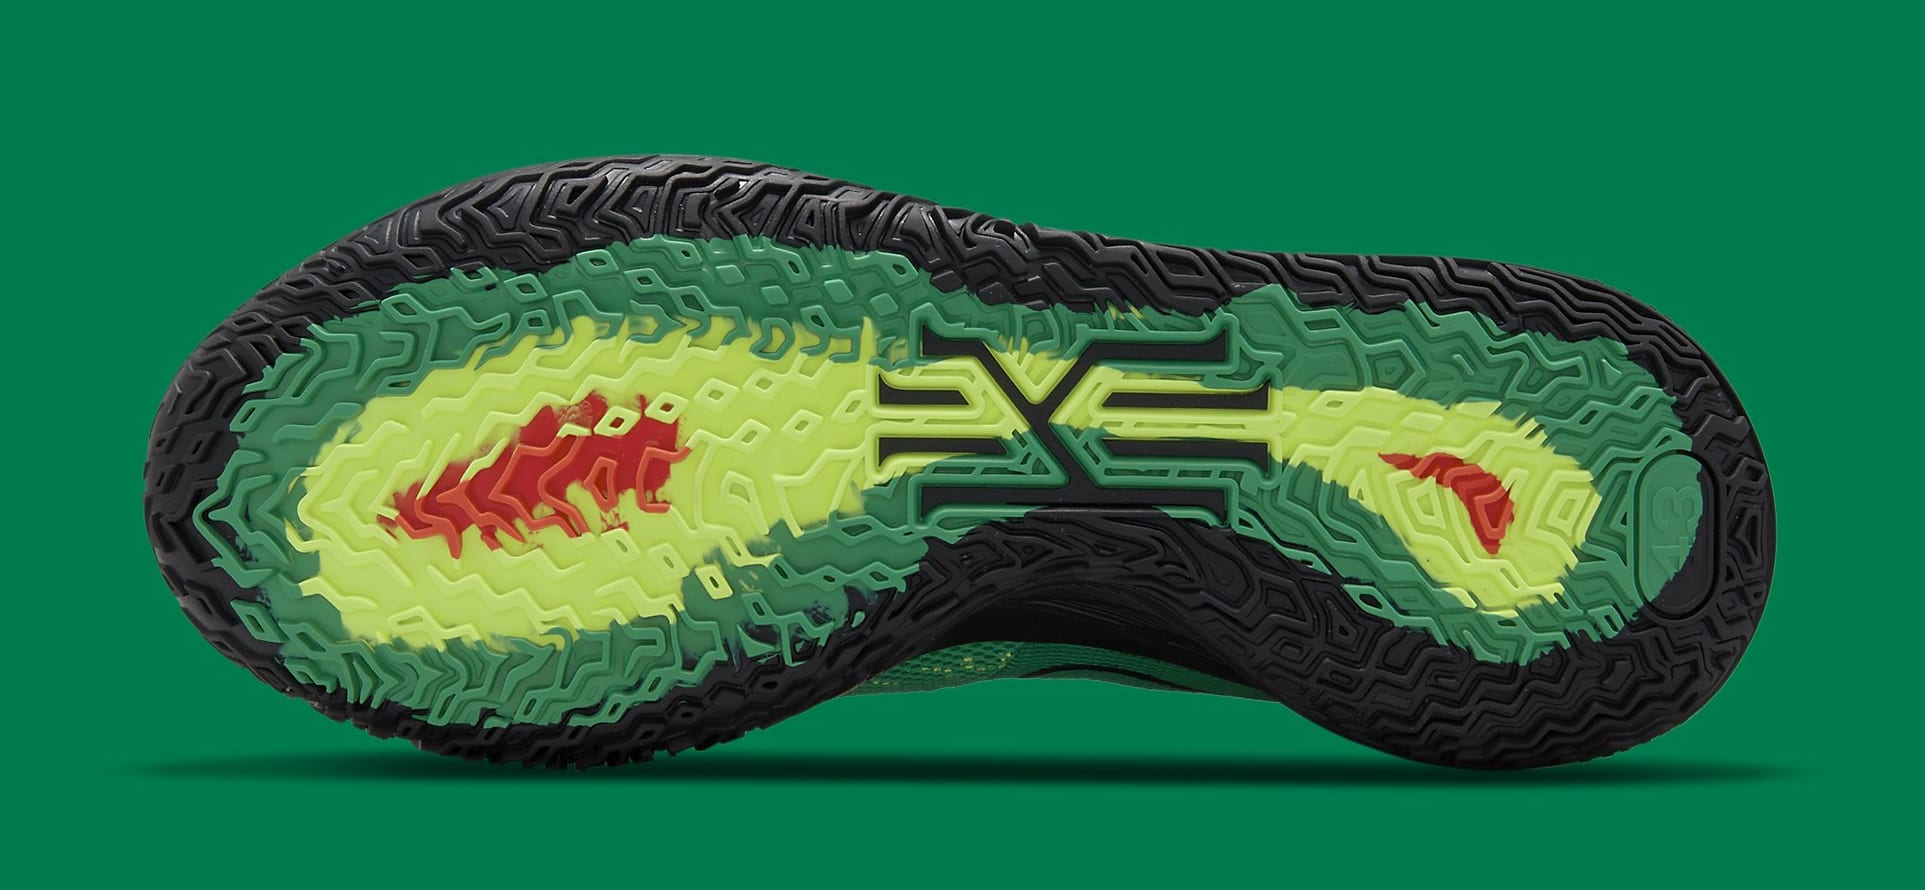 Nike Kyrie 7 &#x27;Weatherman&#x27; CQ9327-300 Outsole